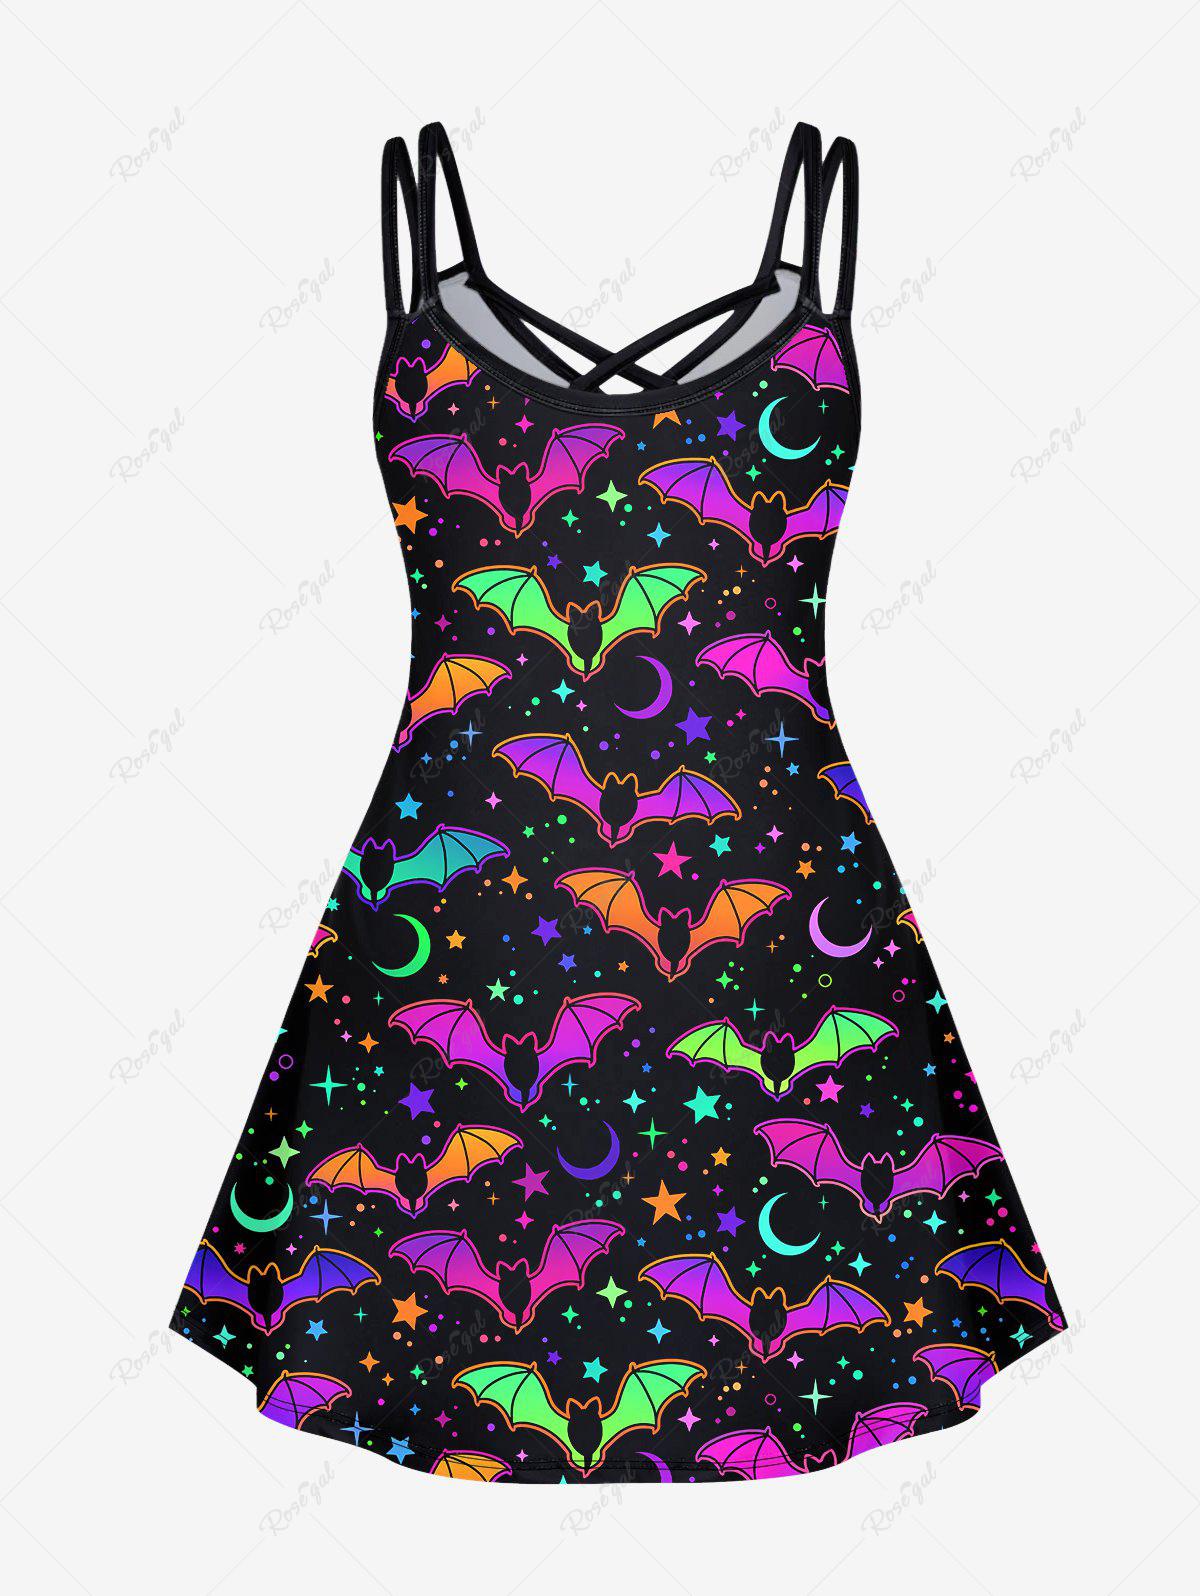 💗LAUREN LOVES💗 Halloween Costume Gothic Cute Bat Star Moon Print Crisscross Halloween Cami Dress